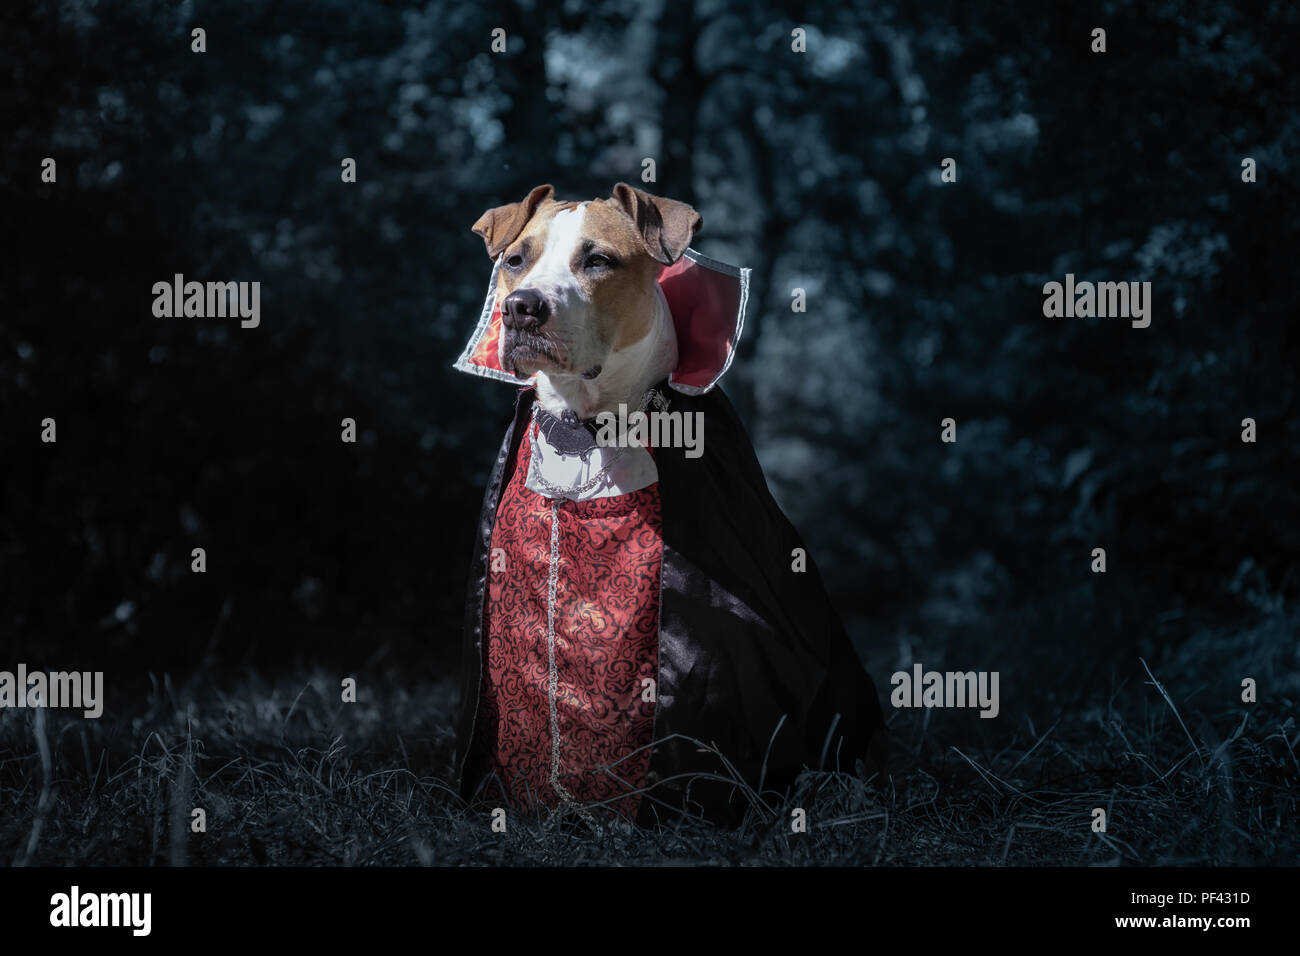 Perro hermoso vestido como vampiro en oscuro bosque iluminada por la luna.  Staffordshire terrier lindo perrito en disfraz de Halloween de miedo vampiro  en el bosque, shot Fotografía de stock - Alamy